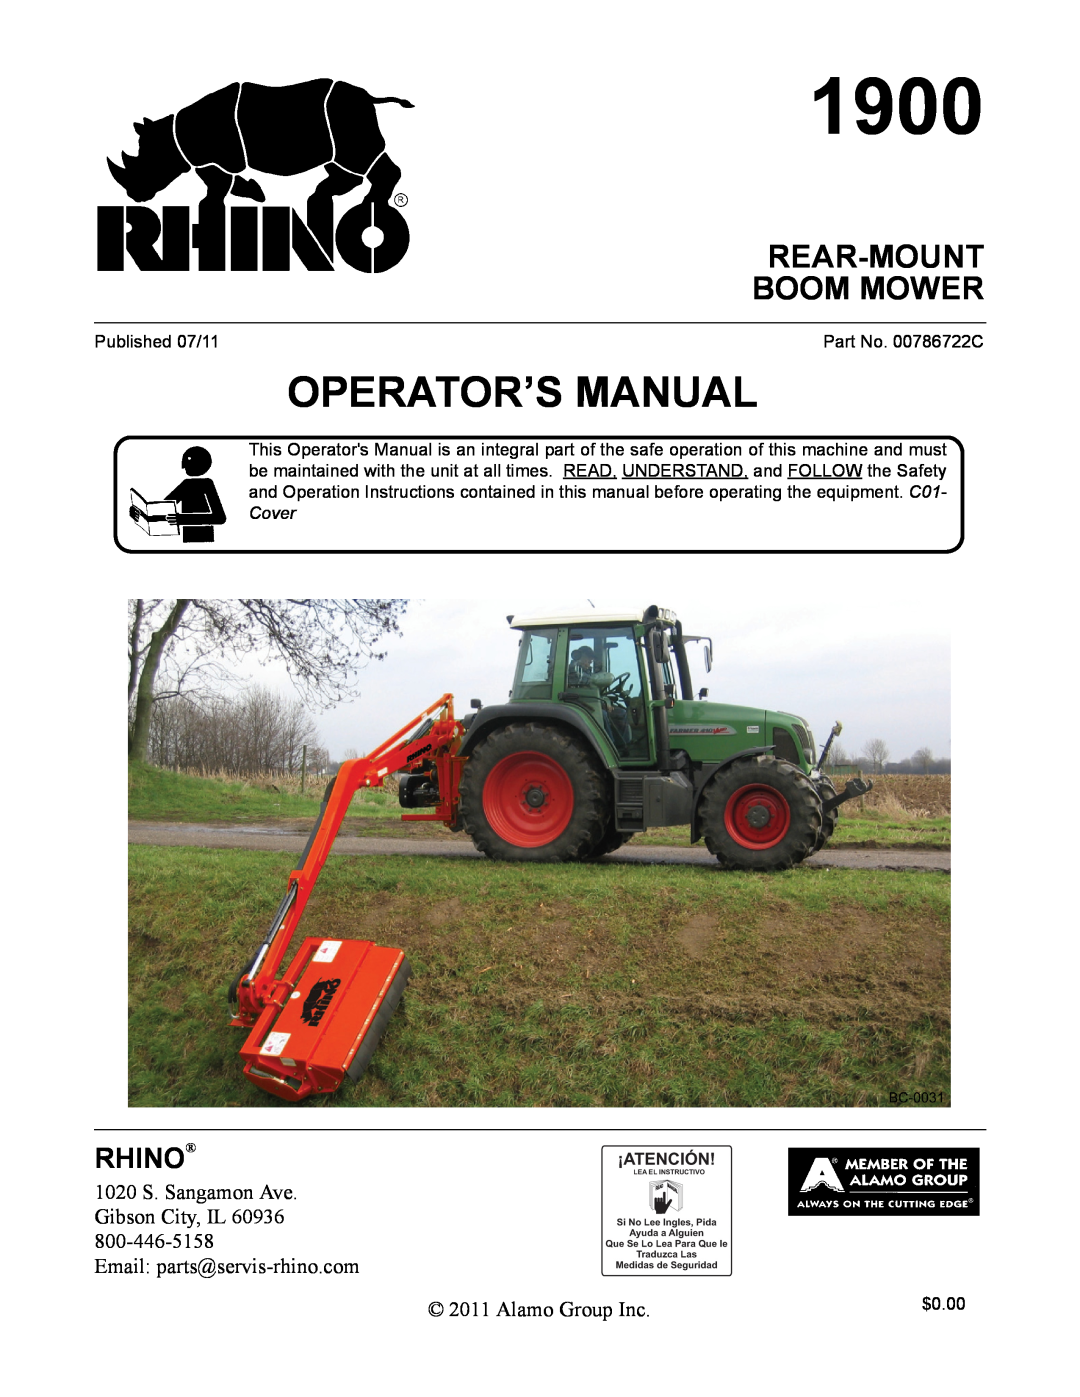 Alamo 1900 manual Rear-Mount Boom Mower, Rhino, Operator’S Manual 